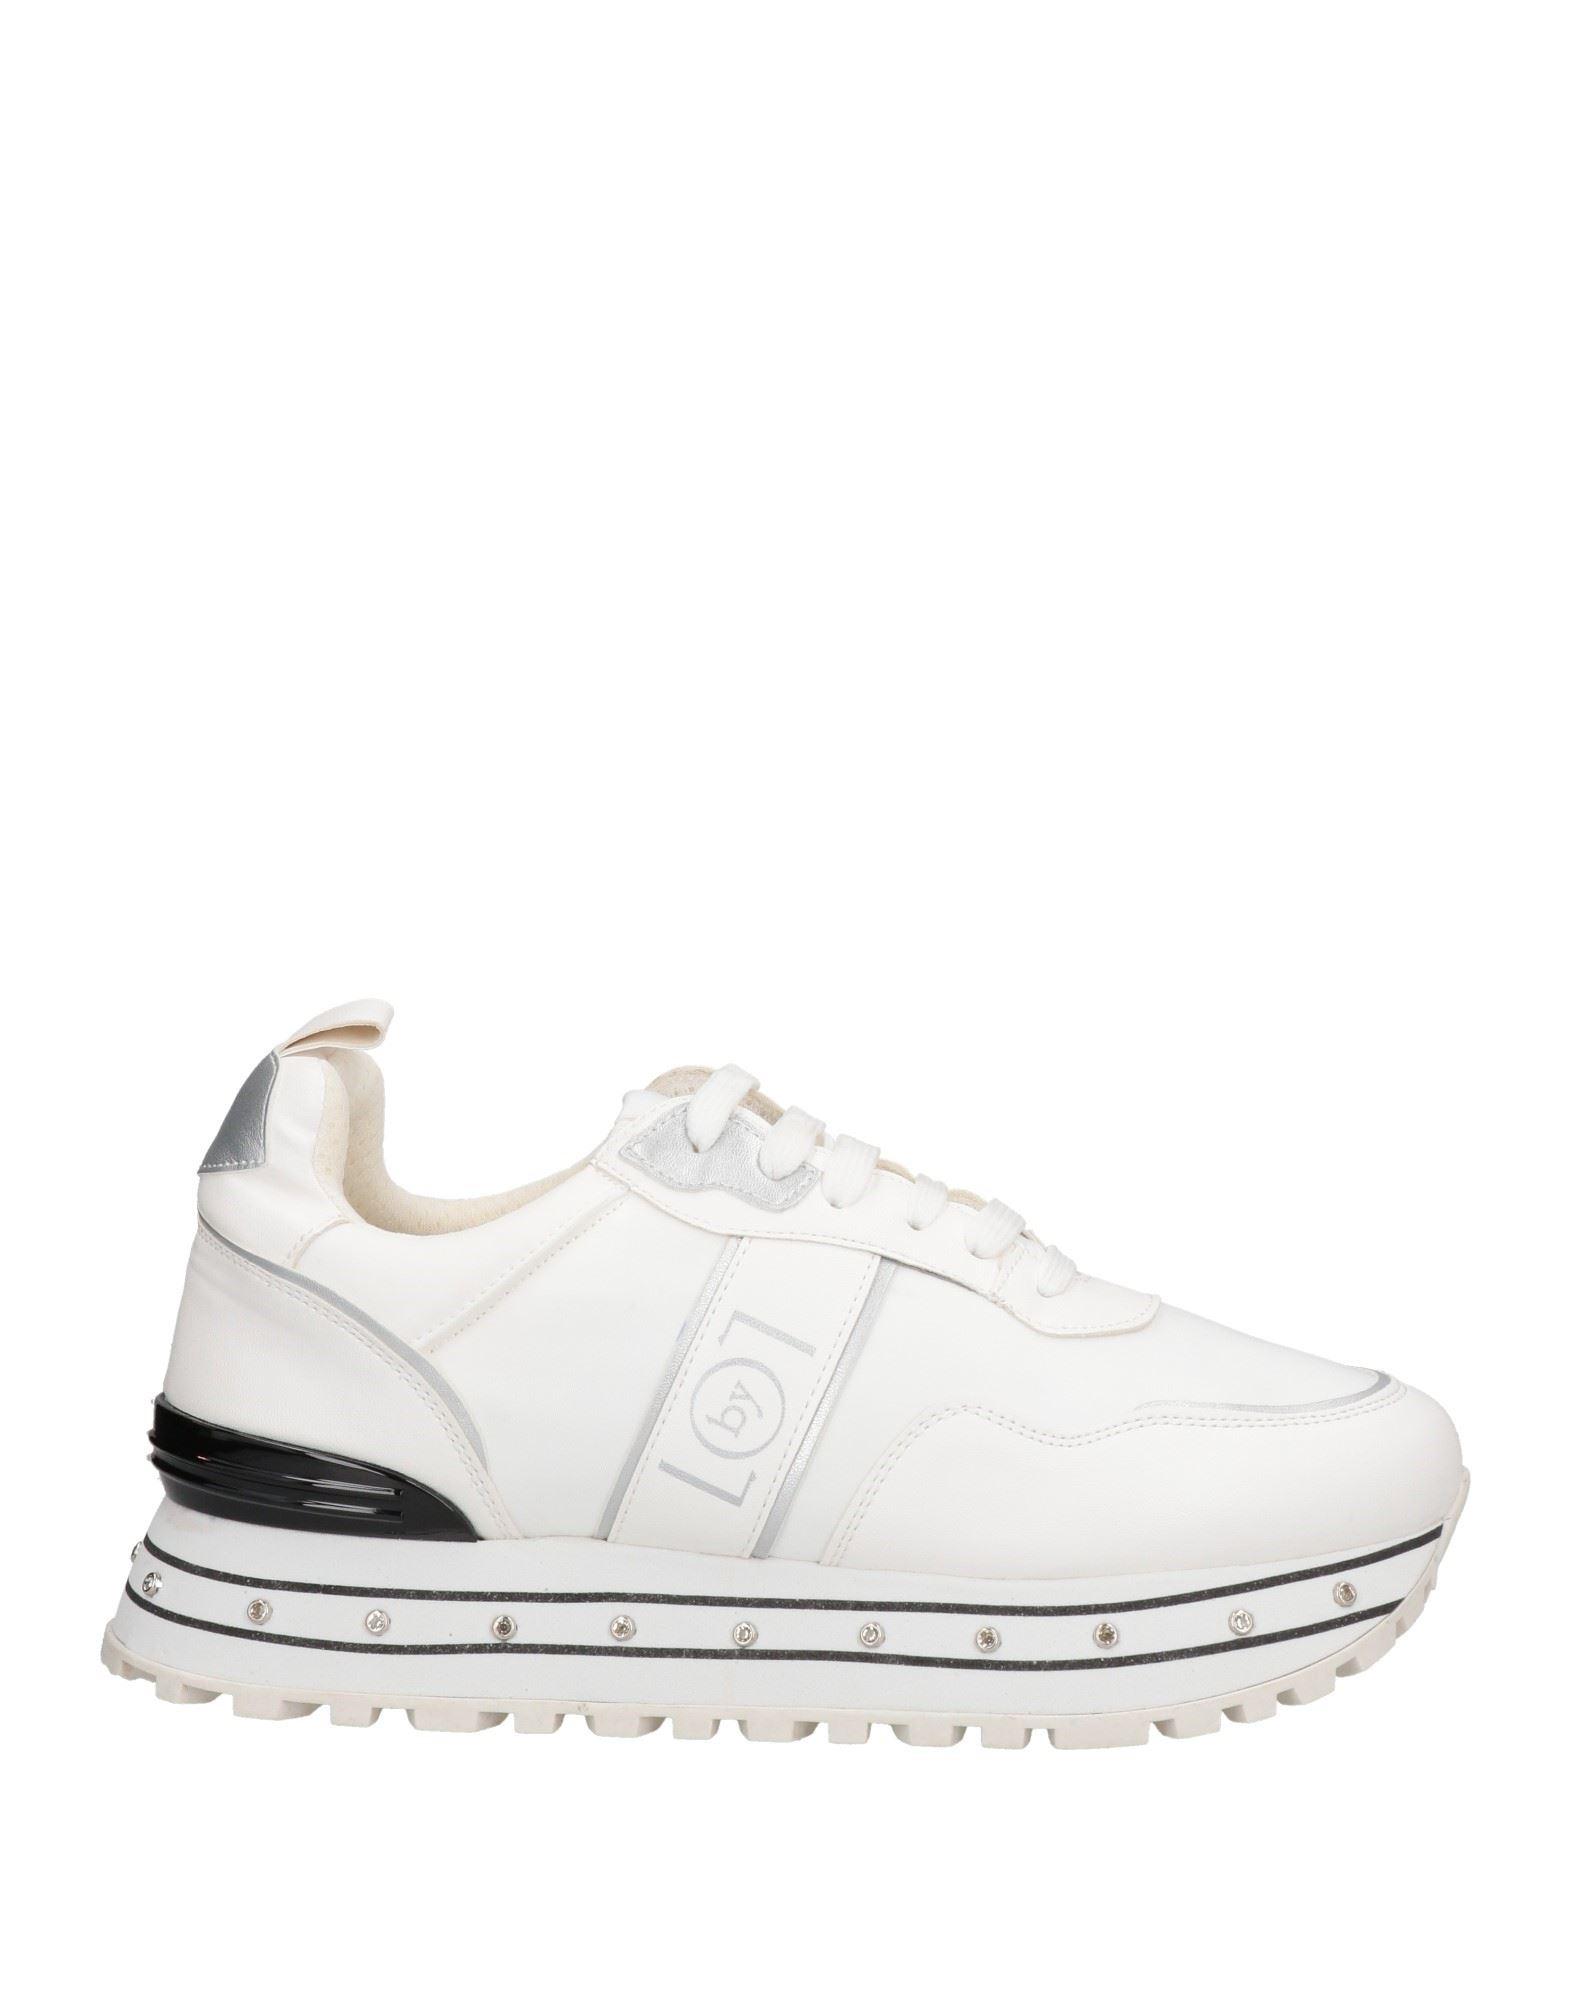 Loretta Pettinari Sneakers in White | Lyst